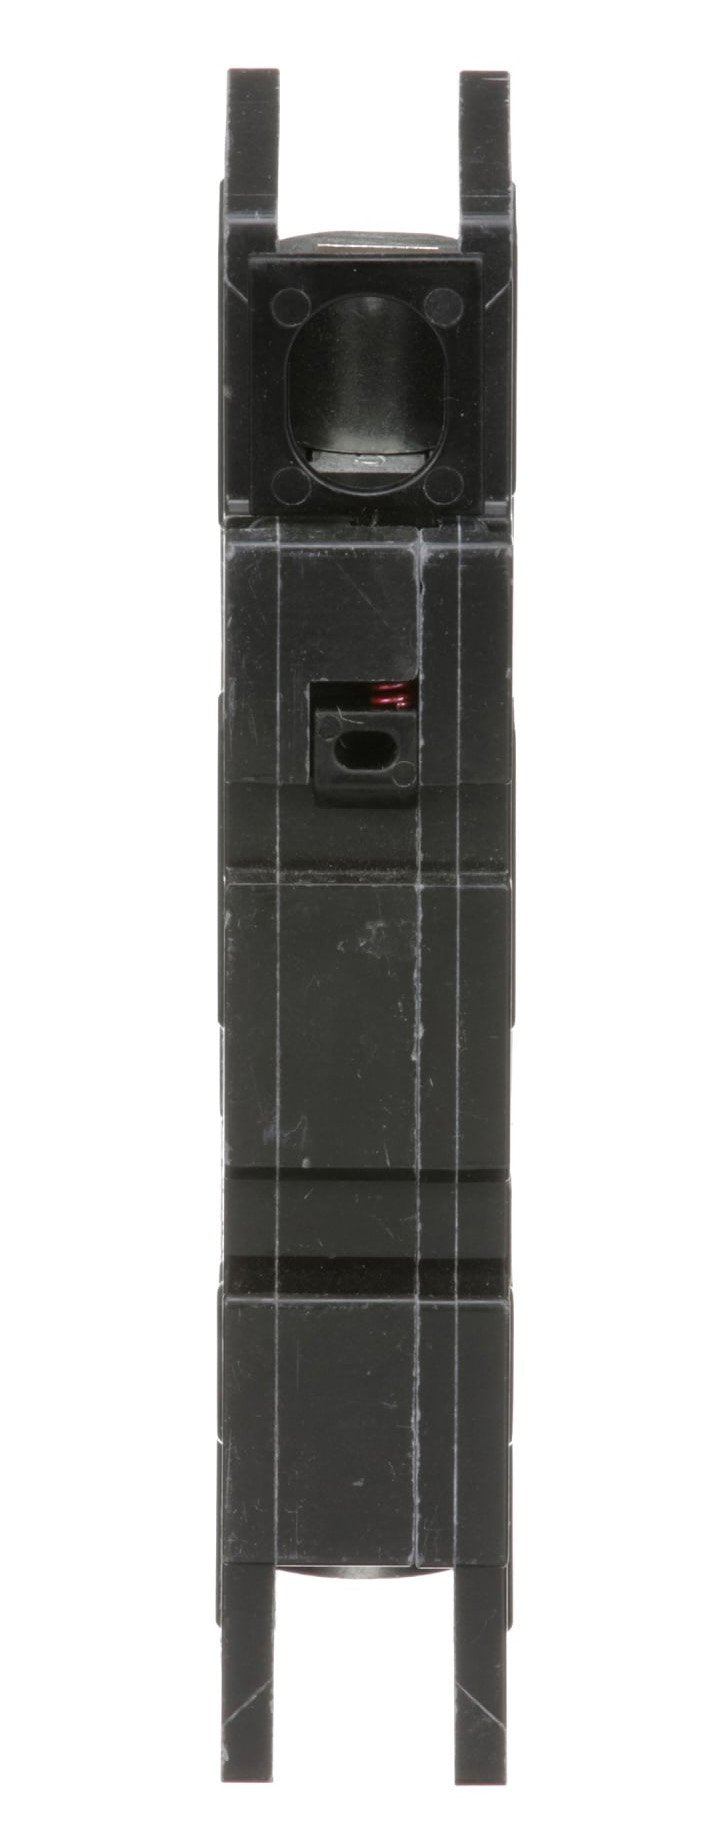 QOU120 - Square D - 20 Amp Circuit Breaker